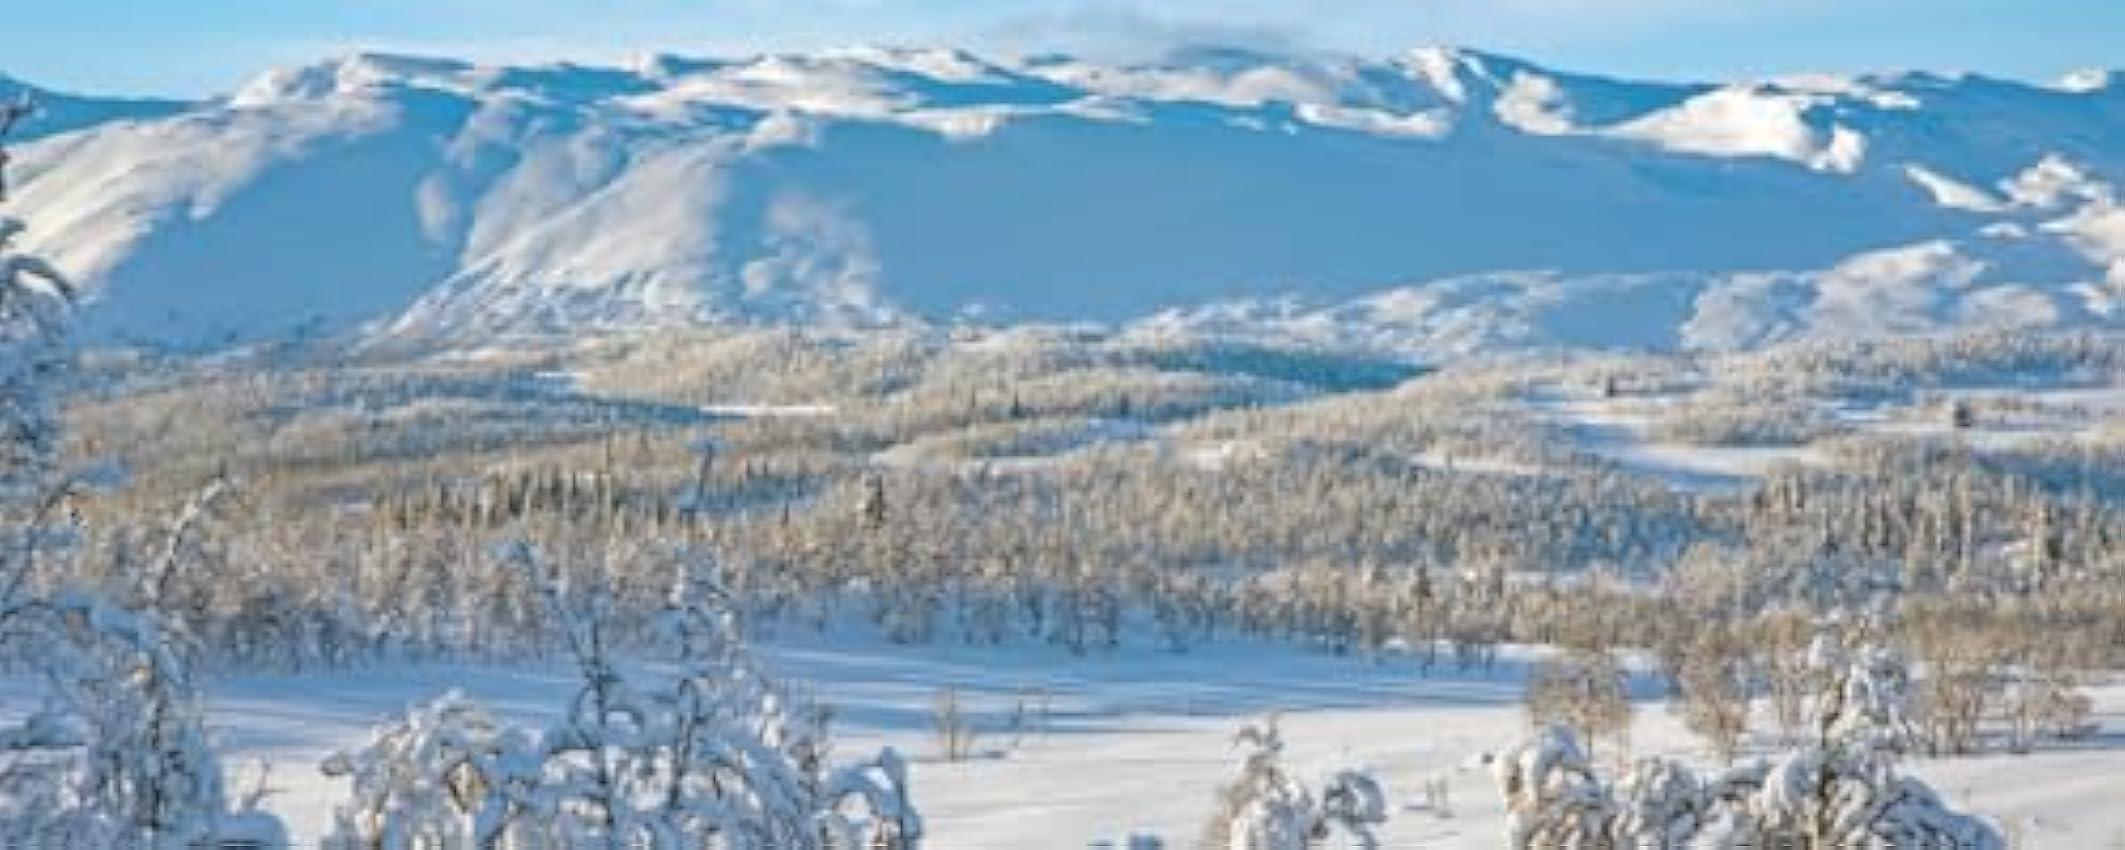 Lais Puzzle Paysage de Montagne Telemark, Norvège 2000 pièces Panorama xXengF09